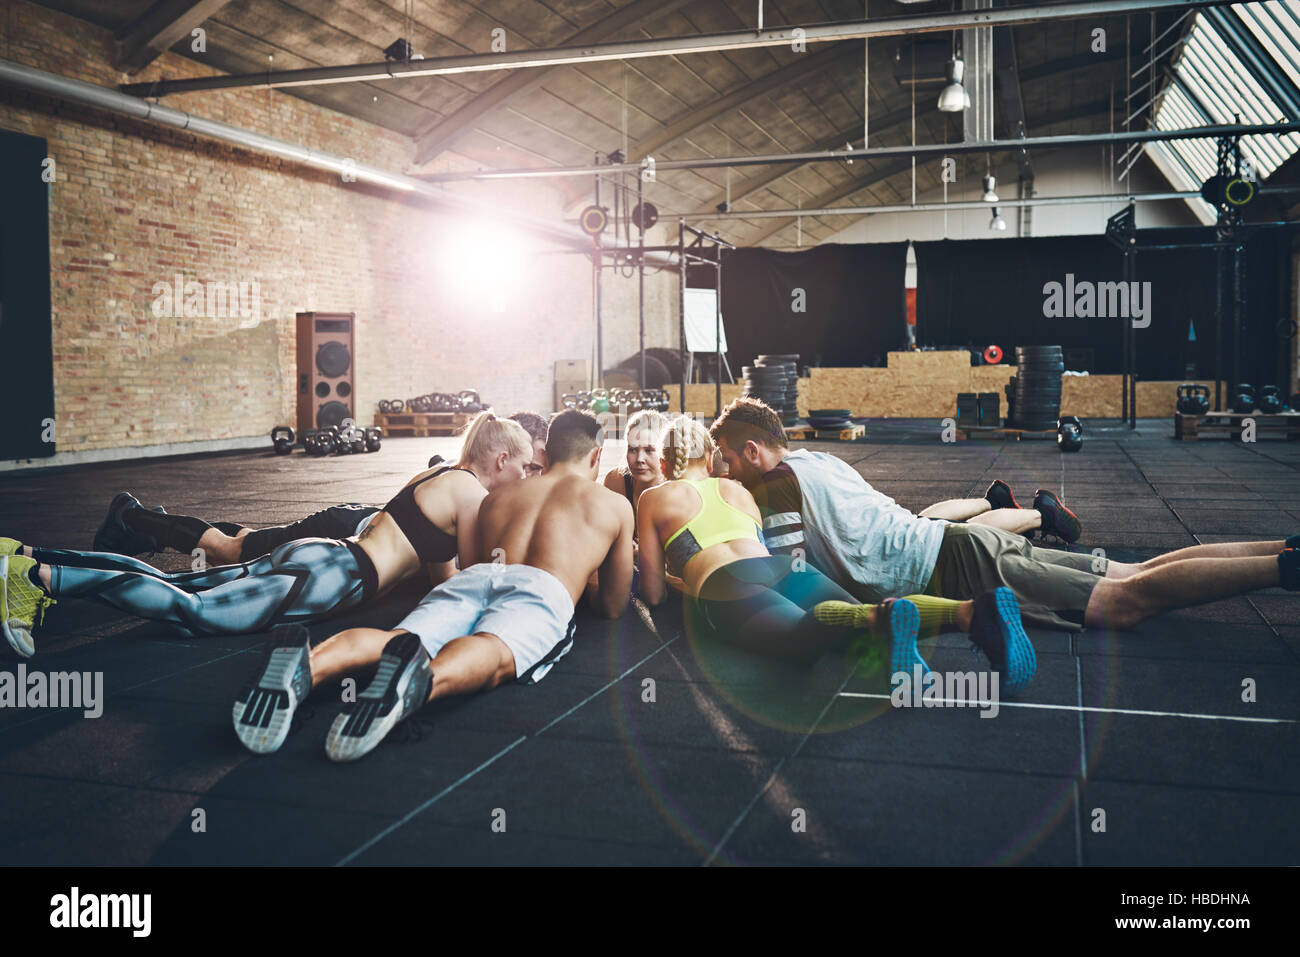 Groupe d'adultes d'athlétisme portant sur l'estomac au cours de la ppe ou remonté le moral sur le plancher à grande session cross-fit sport formation Banque D'Images